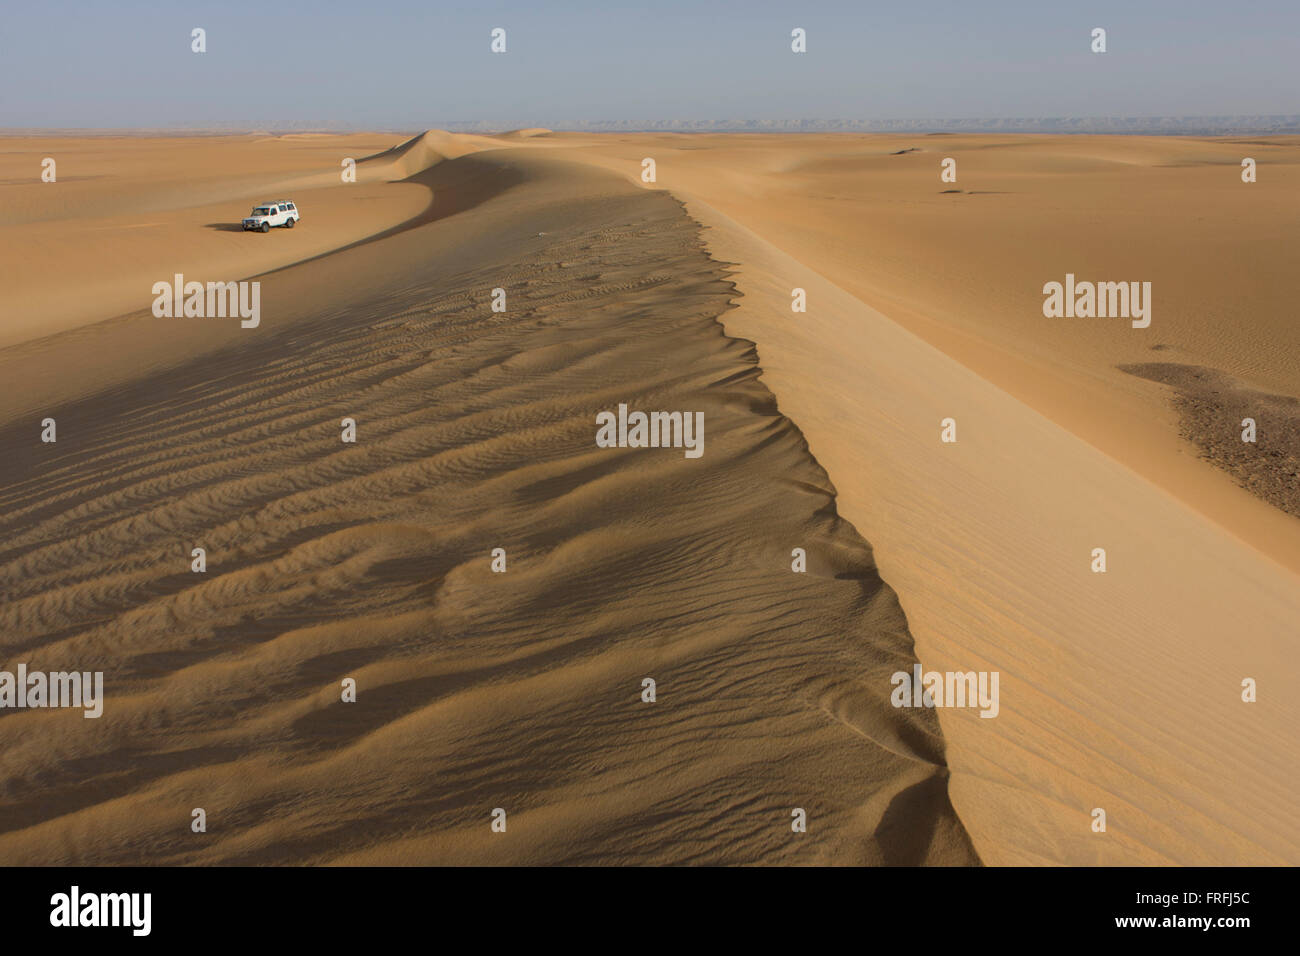 Eine Wüste Expeditionsmobil 4 x 4 klettert eine Sanddüne am al-Galamun, in der Nähe von Dahkla Oase, westliche Wüste, Ägypten. Die westliche Wüste umfasst eine Fläche von rund 700.000 km2, dadurch entfallen rund zwei Drittel der gesamten Landfläche Ägyptens. Dachla ist eines der sieben Oasen Ägyptens westlichen Wüste (Teil der libyschen Wüste). Es liegt im New Valley Governorate, 350 km (220 mi.) und misst ca. 80 km (50 Meilen) von Ost nach West und 25 Kilometer (16 Meile) von Norden nach Süden. Stockfoto